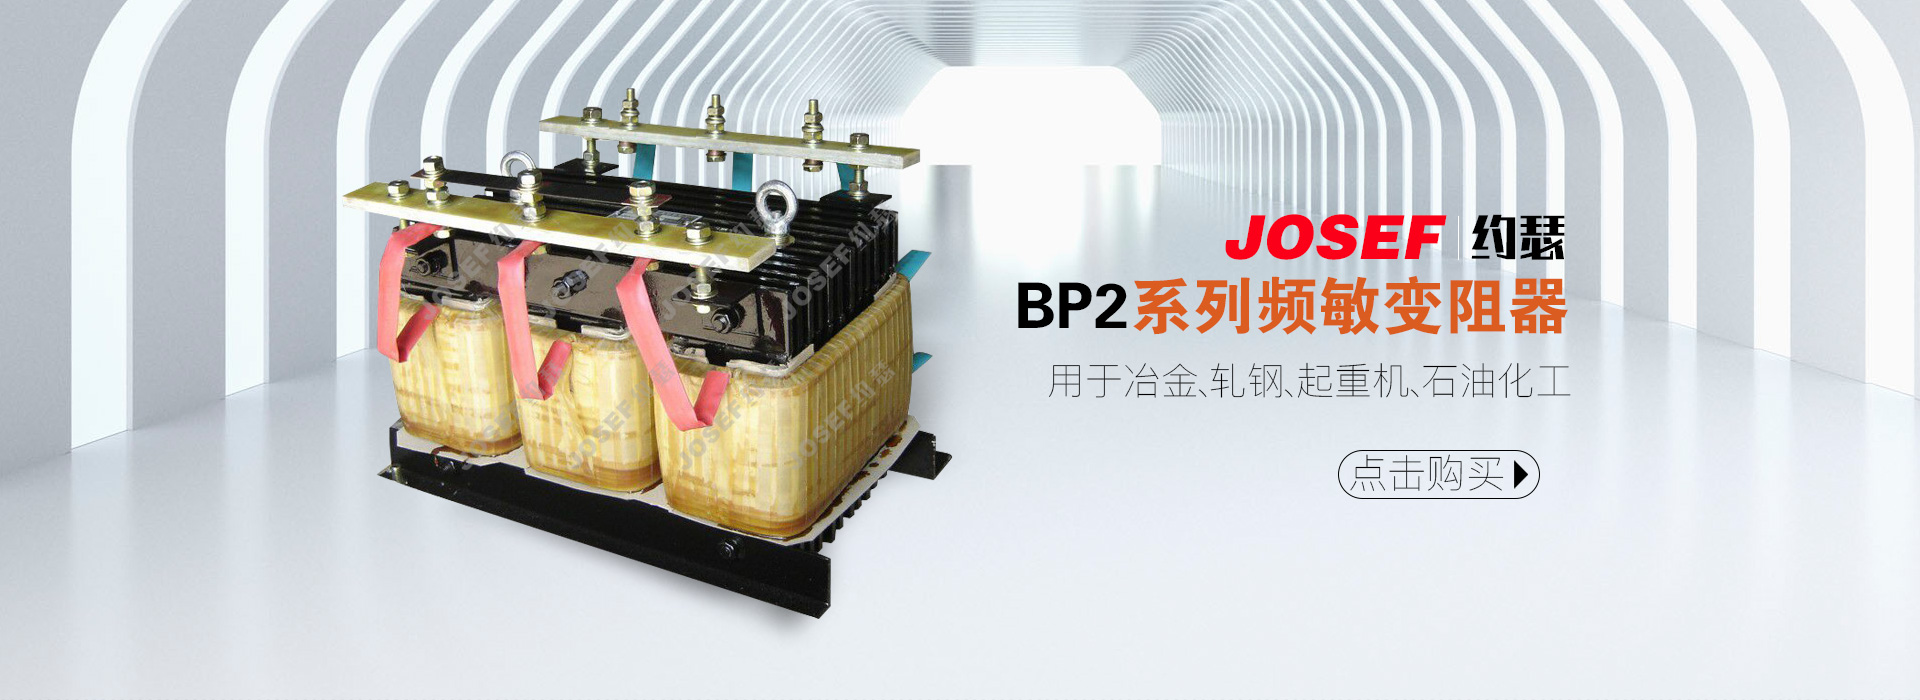 BP2系列频敏变阻器产品展示